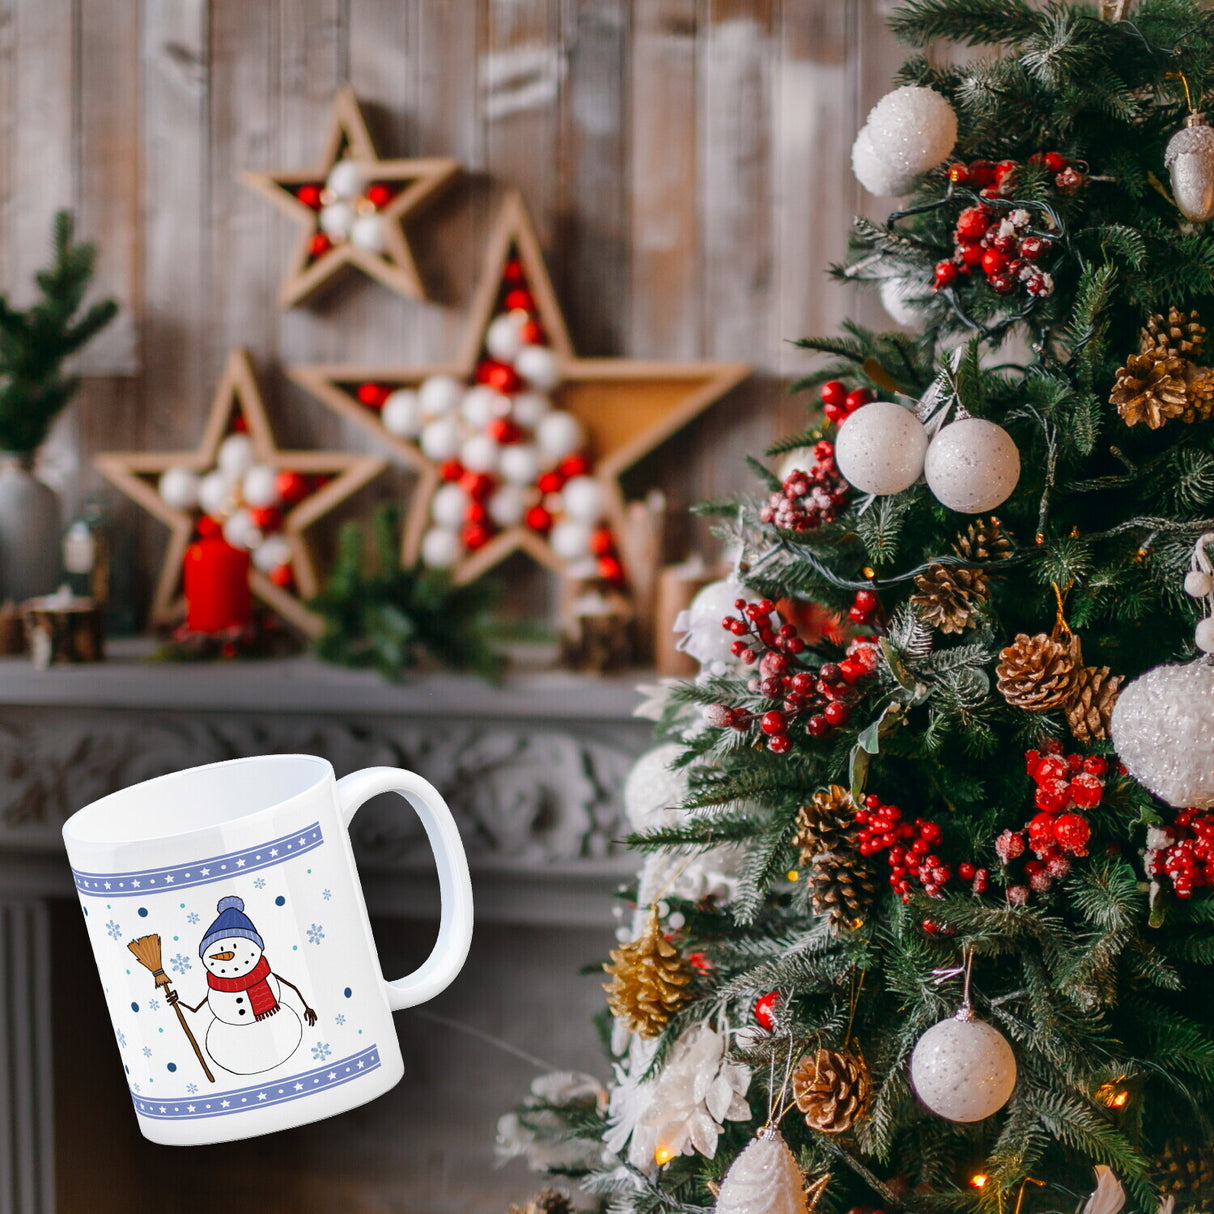 Süßer Schneemann Weihnachten Kaffeebecher